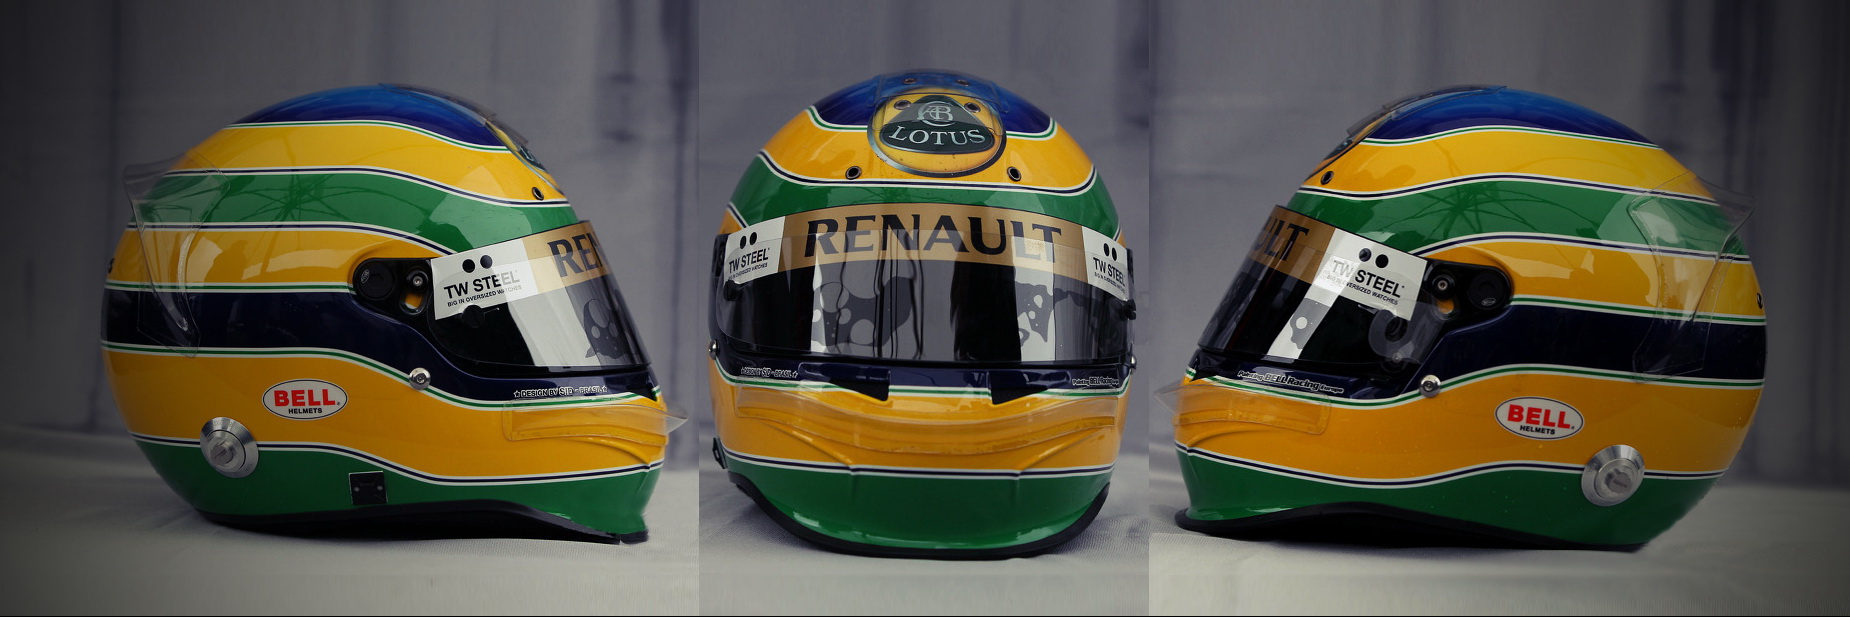 Шлем Бруно Сенны на сезон 2011 года | 2011 helmet of Bruno Senna